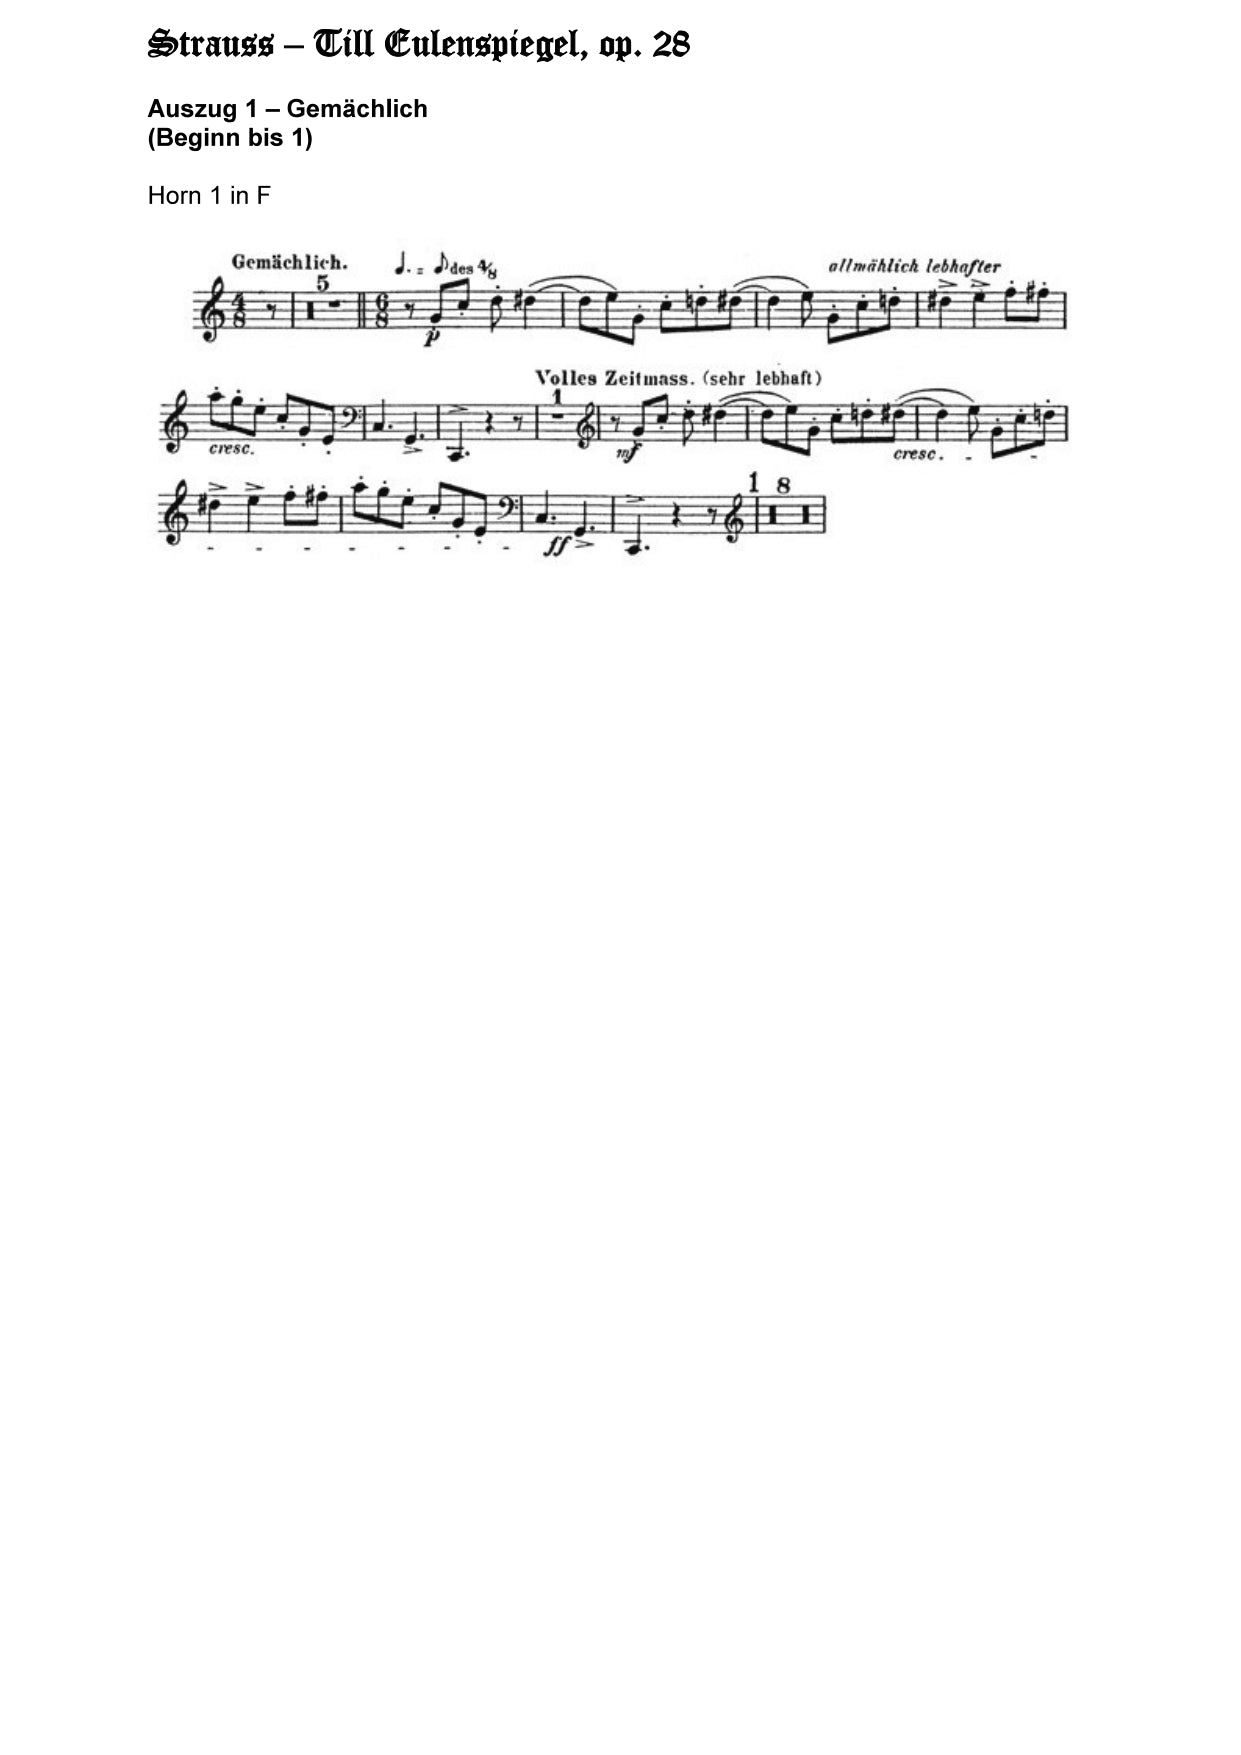 Orchester Studie - Richard Strauss - Till Eulenspiegel, Horn 1,2,3,4